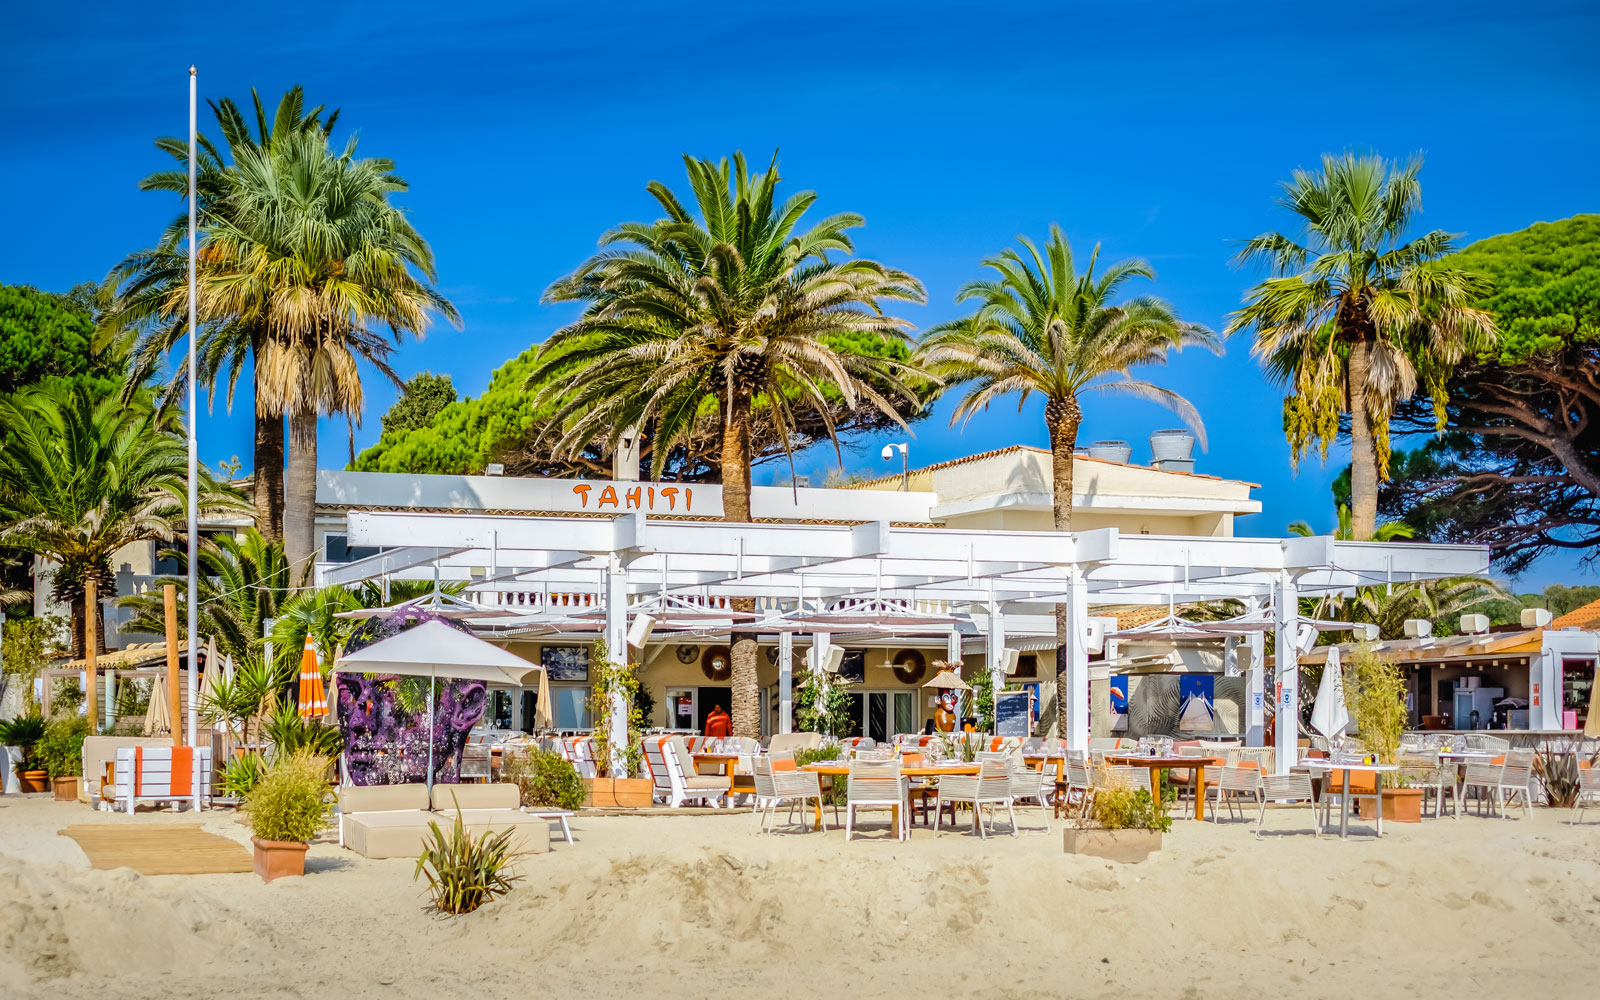 Patru plaje de pe Riviera Franceză musai de văzut — NICE! Magazine